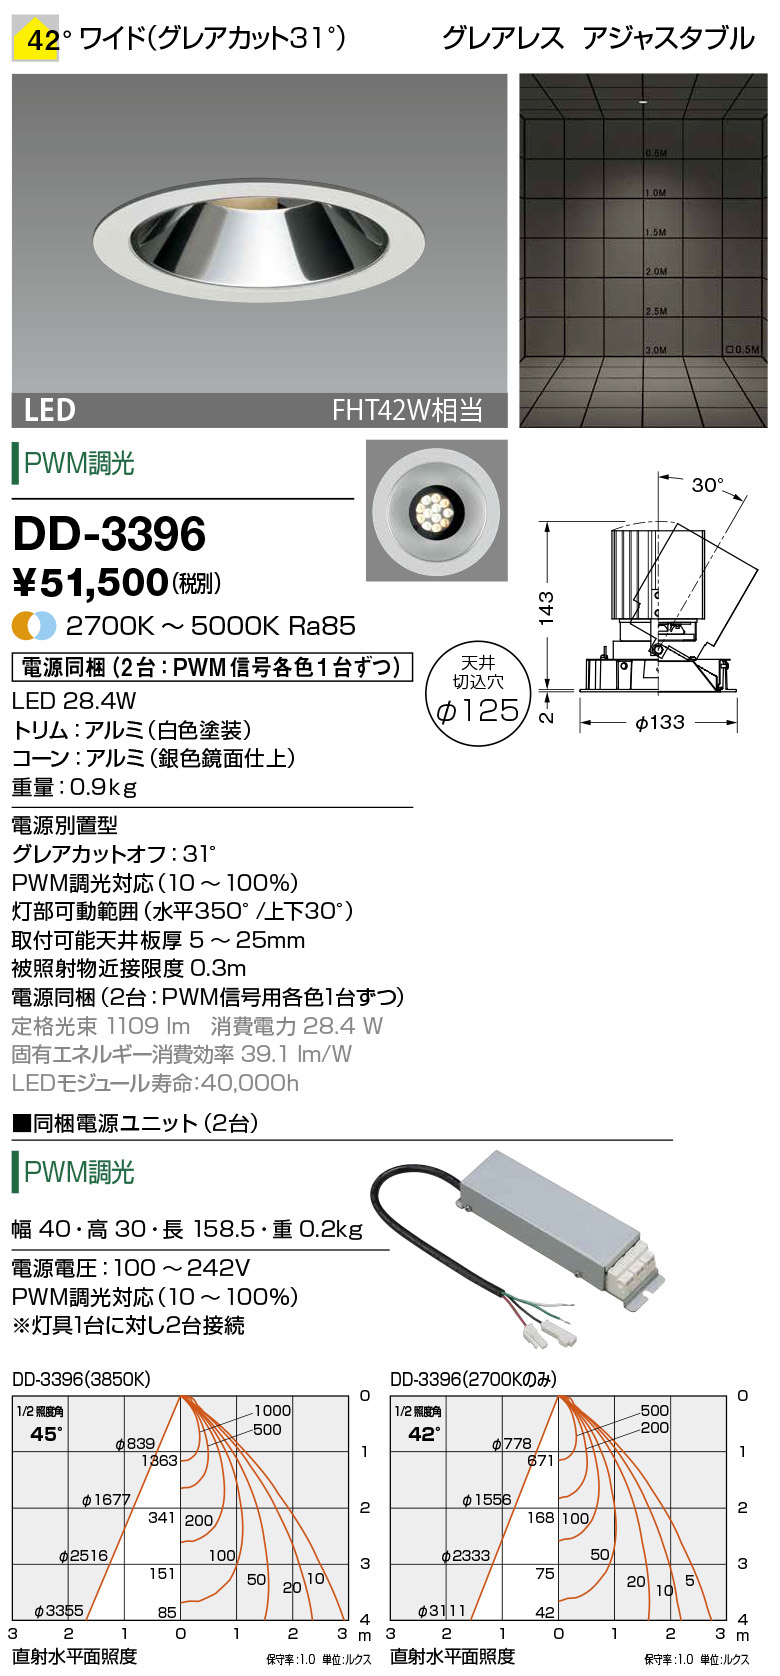 DD-3396 | 照明器具 | LED一体型 ダウンライト Morph アジャスタブル